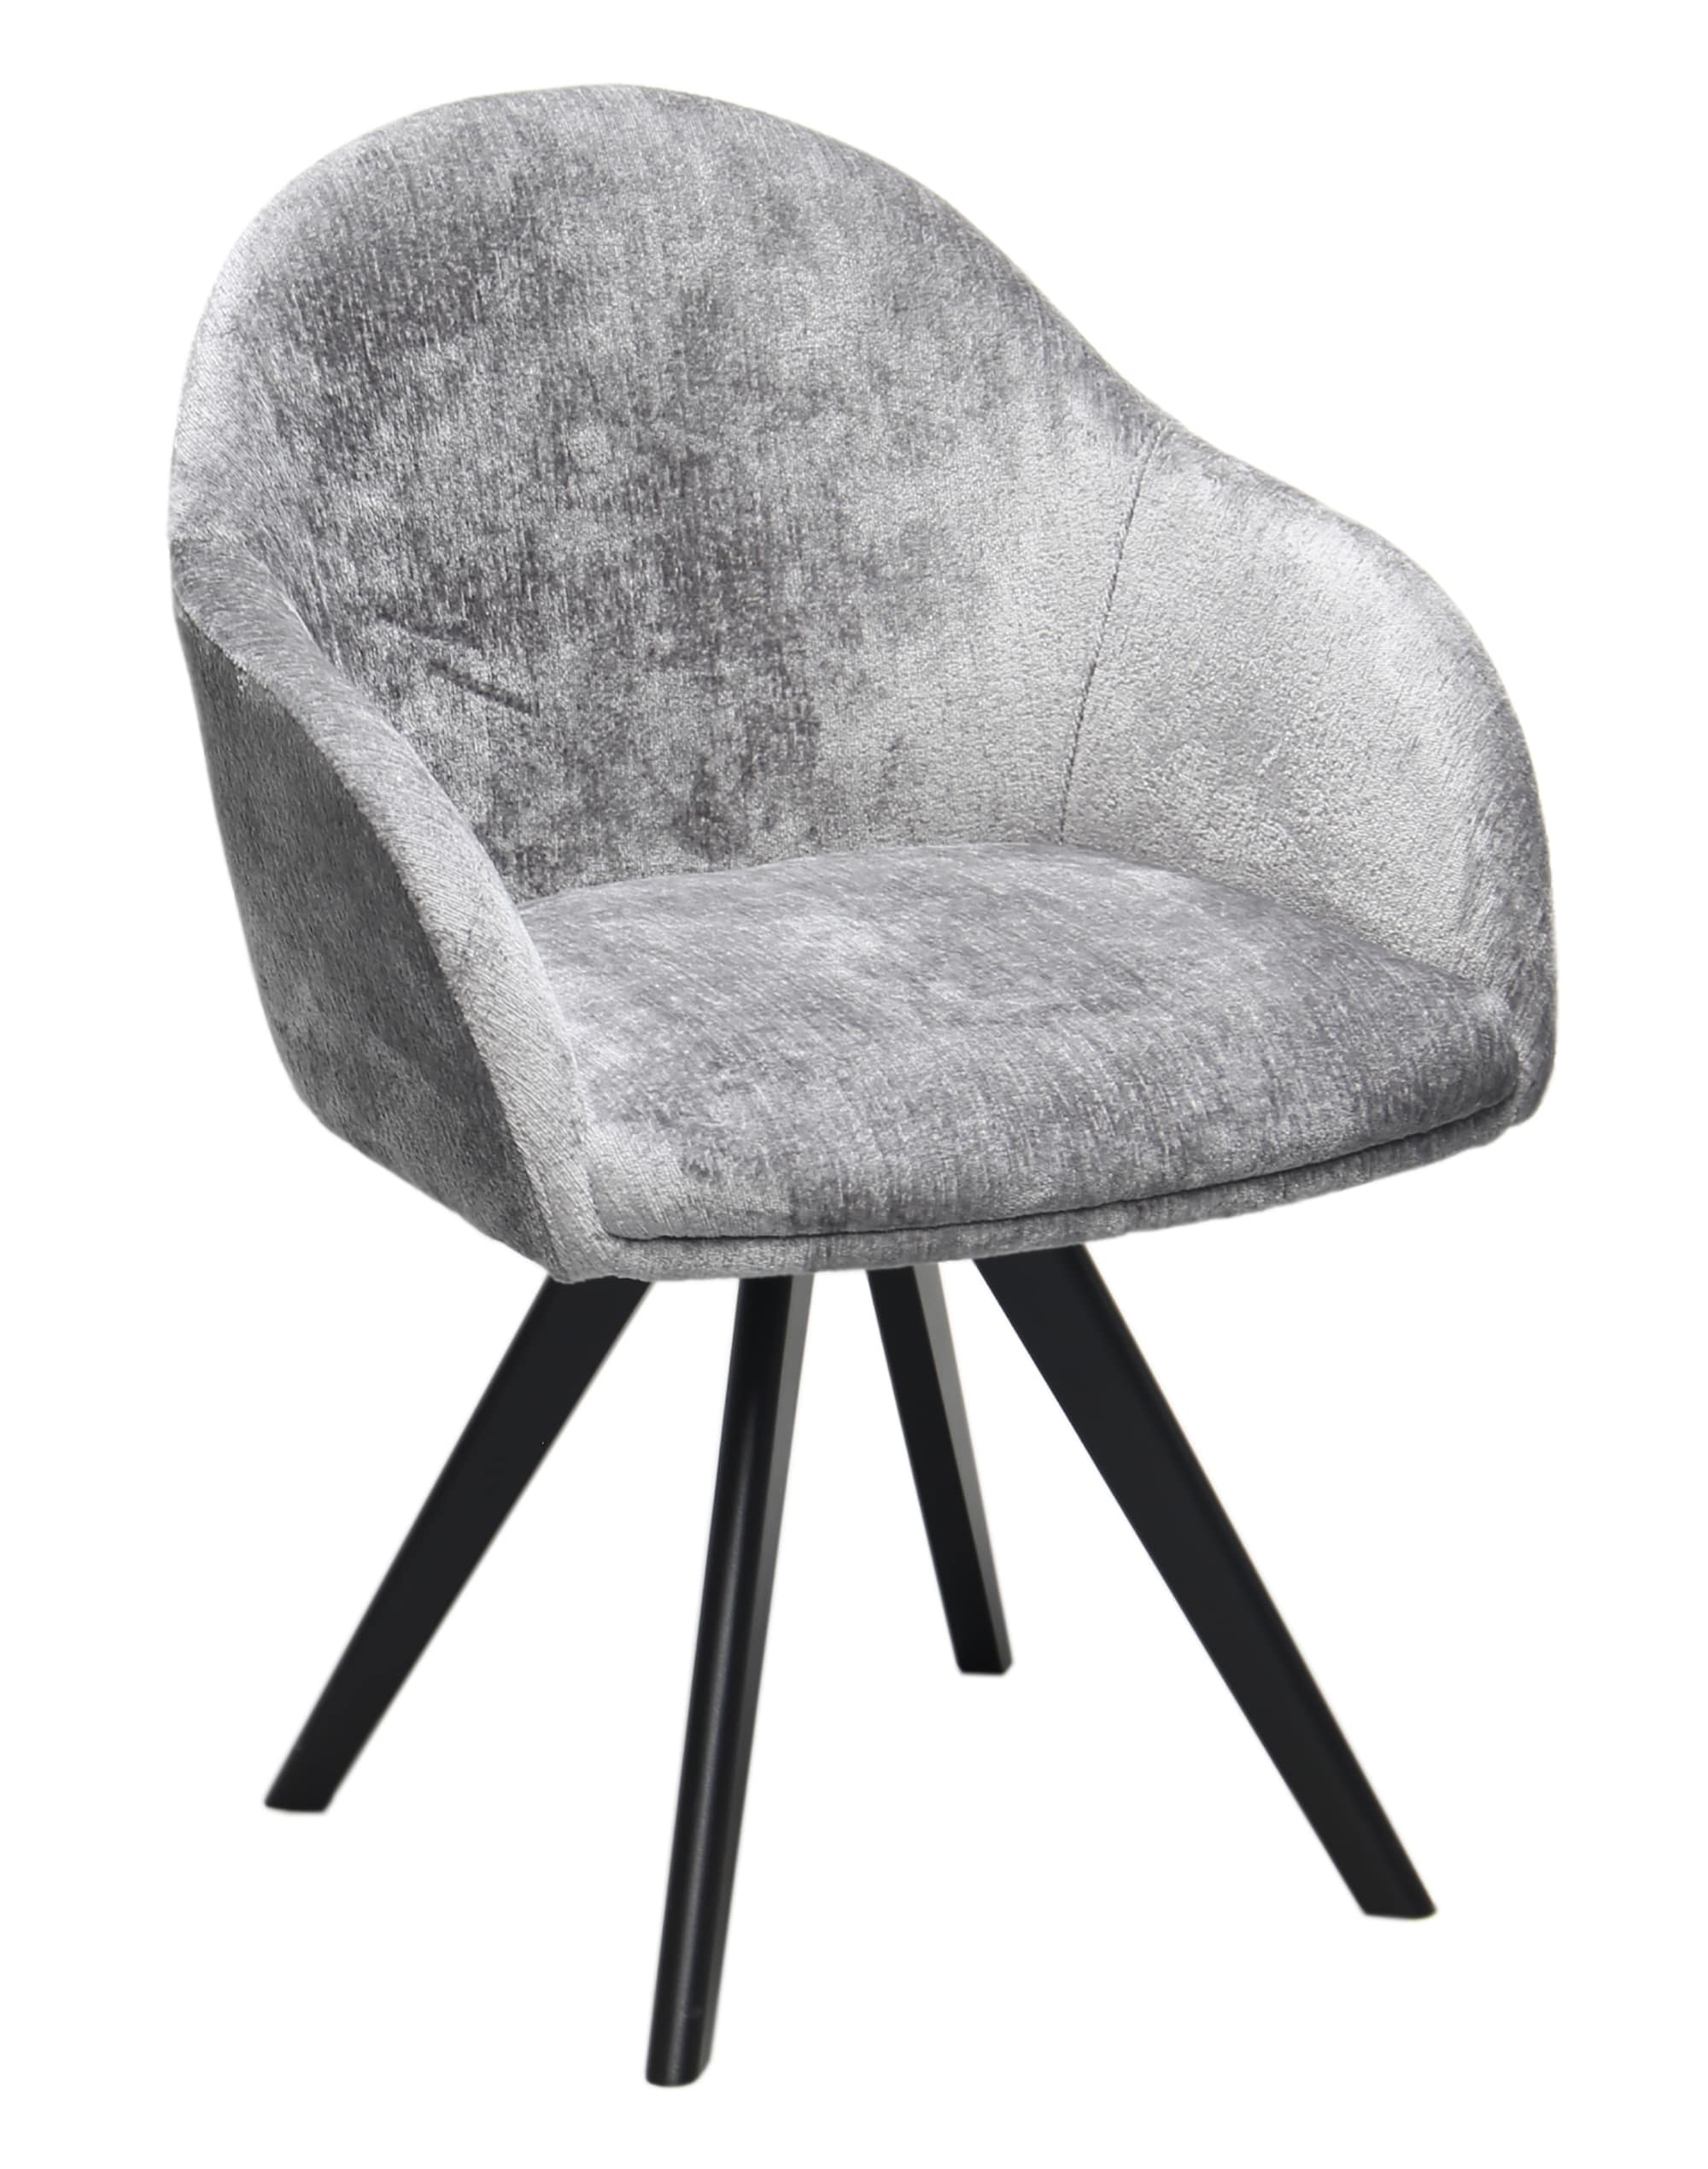 Standard Furniture Gandia Armlehnstuhl mit Spidergestell Metall oder Holz